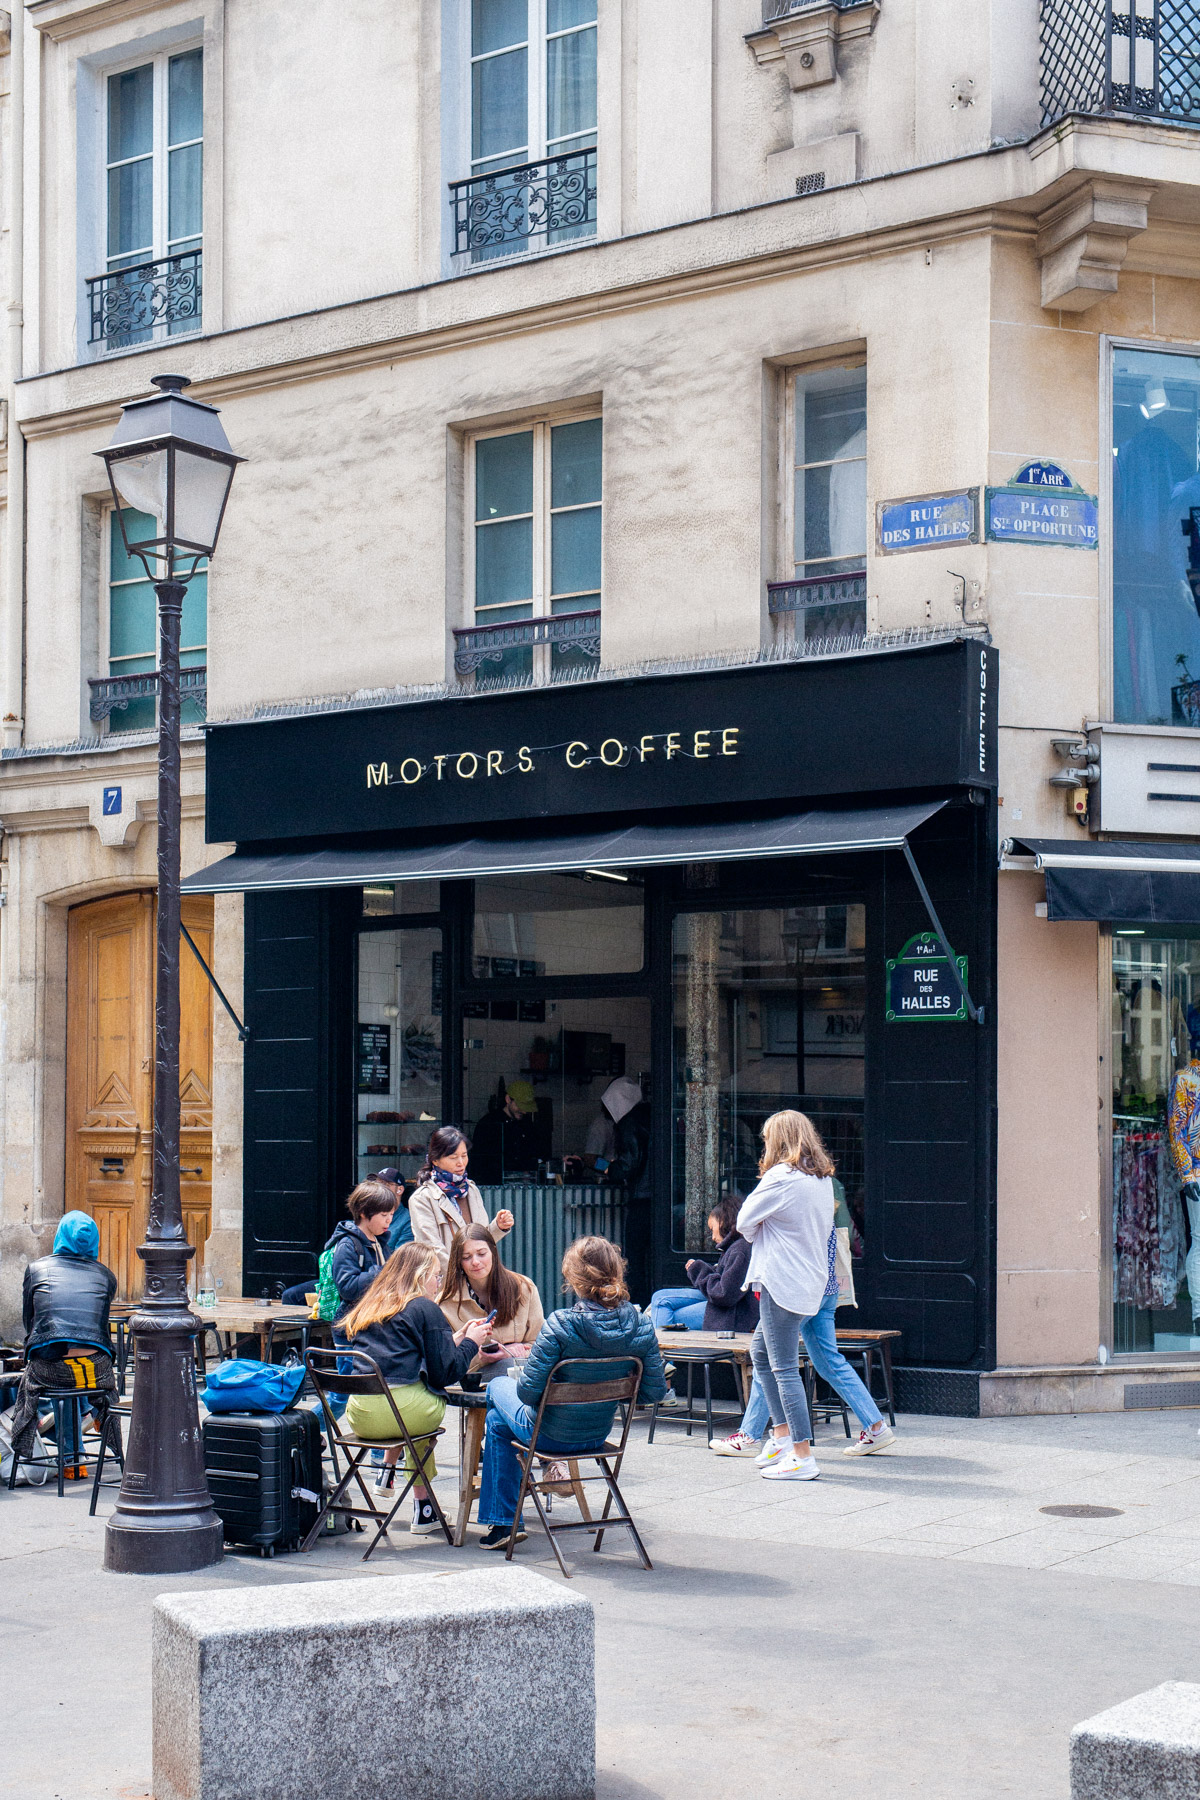 Motors Cafe Exterior
Best Coffee Shops Paris